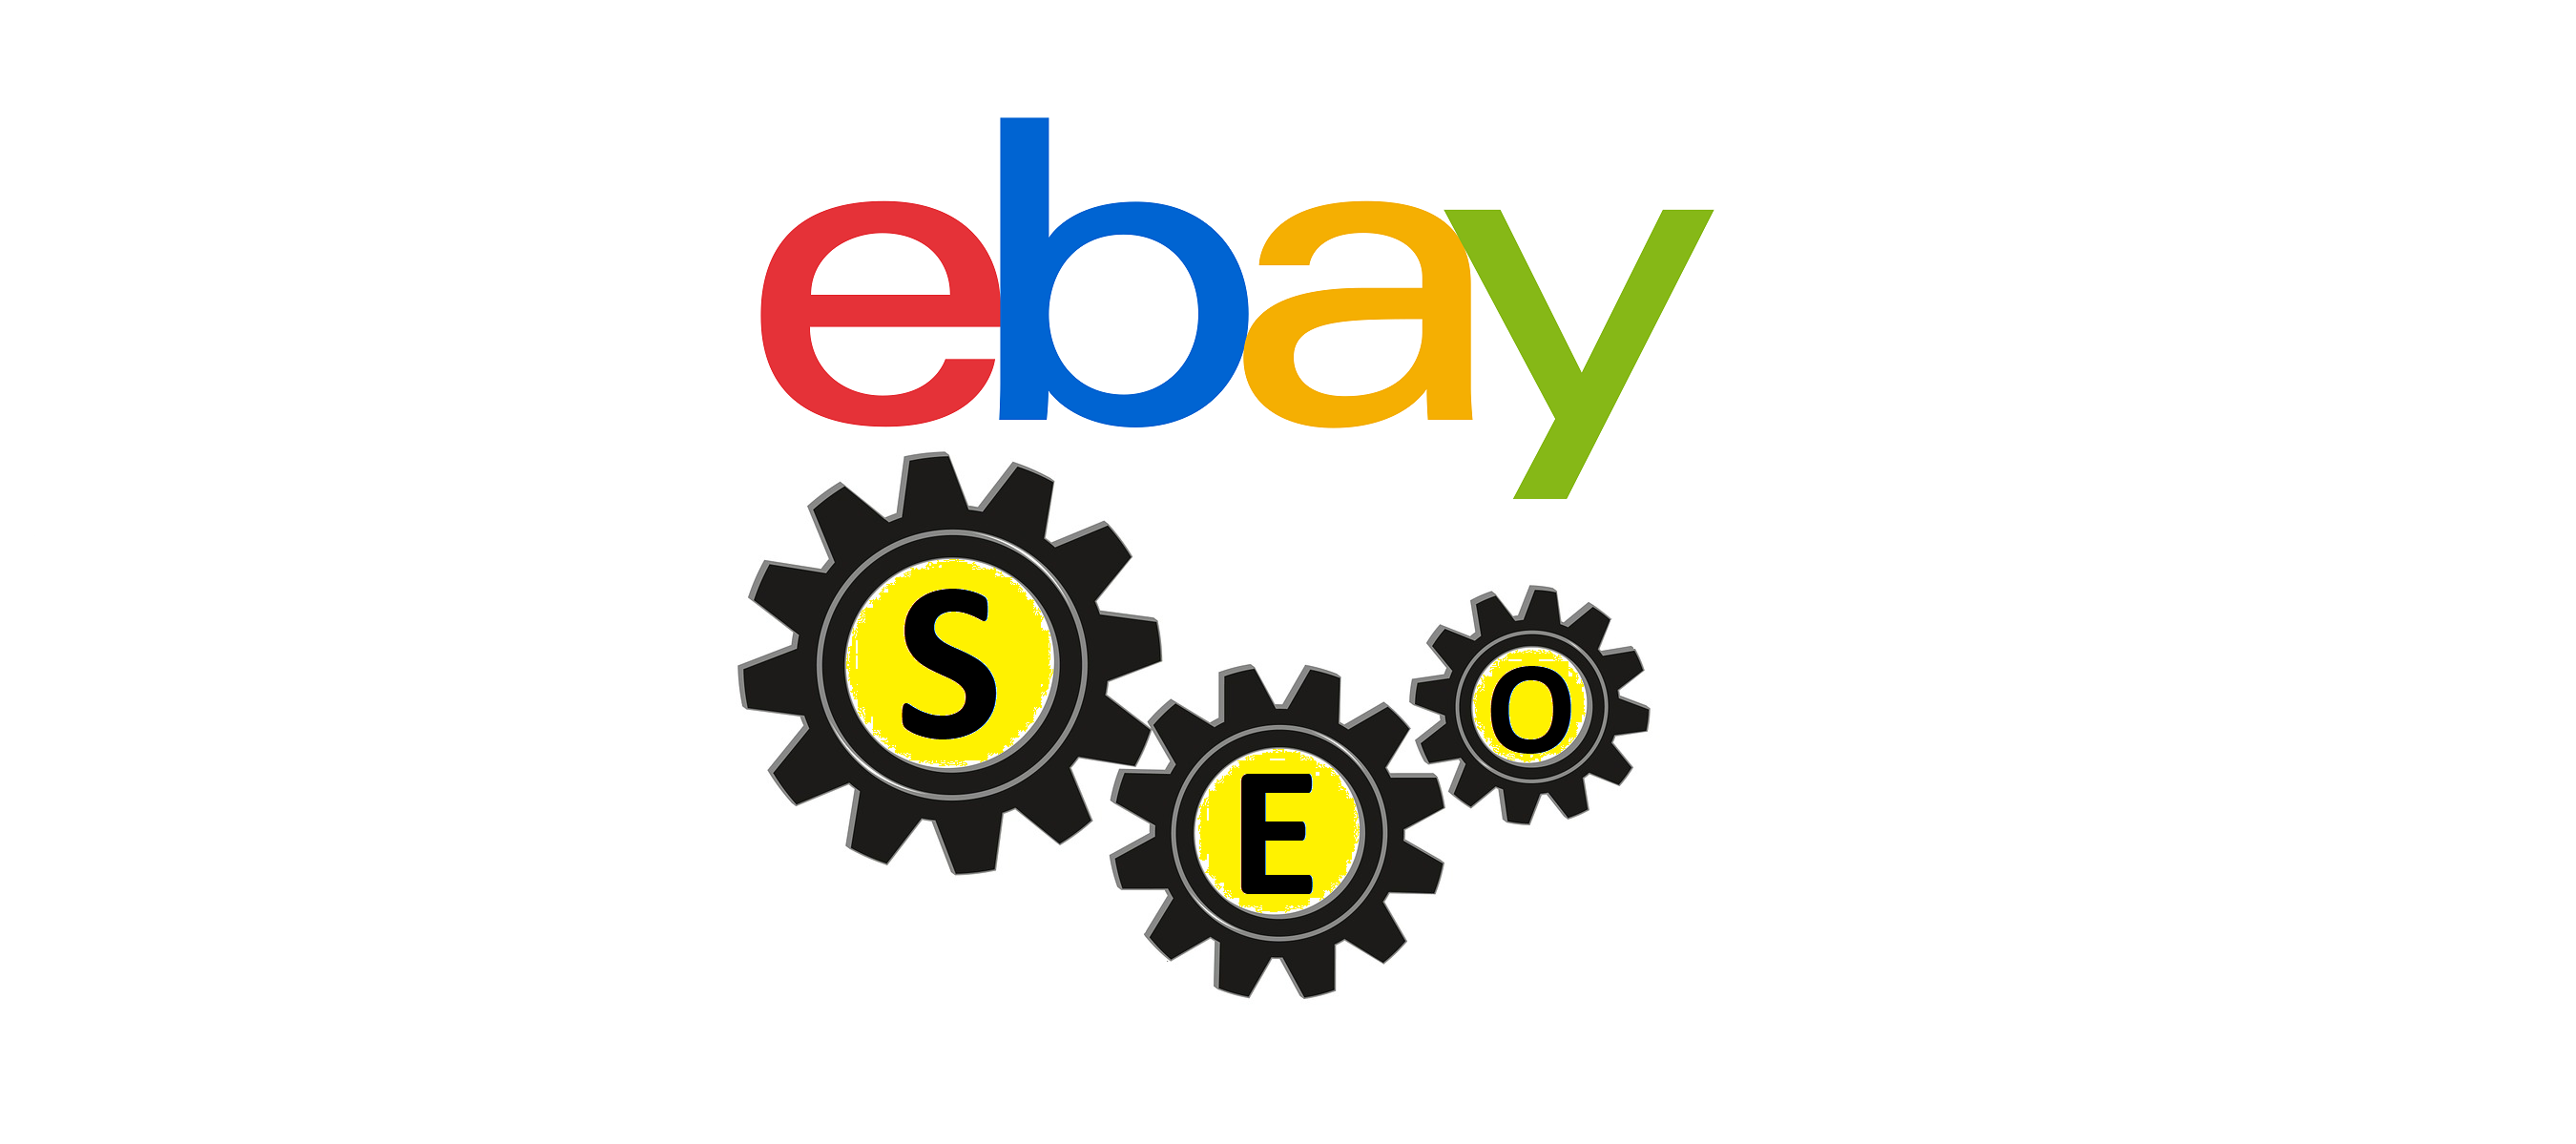 Improve usability on eBay through mobile short description